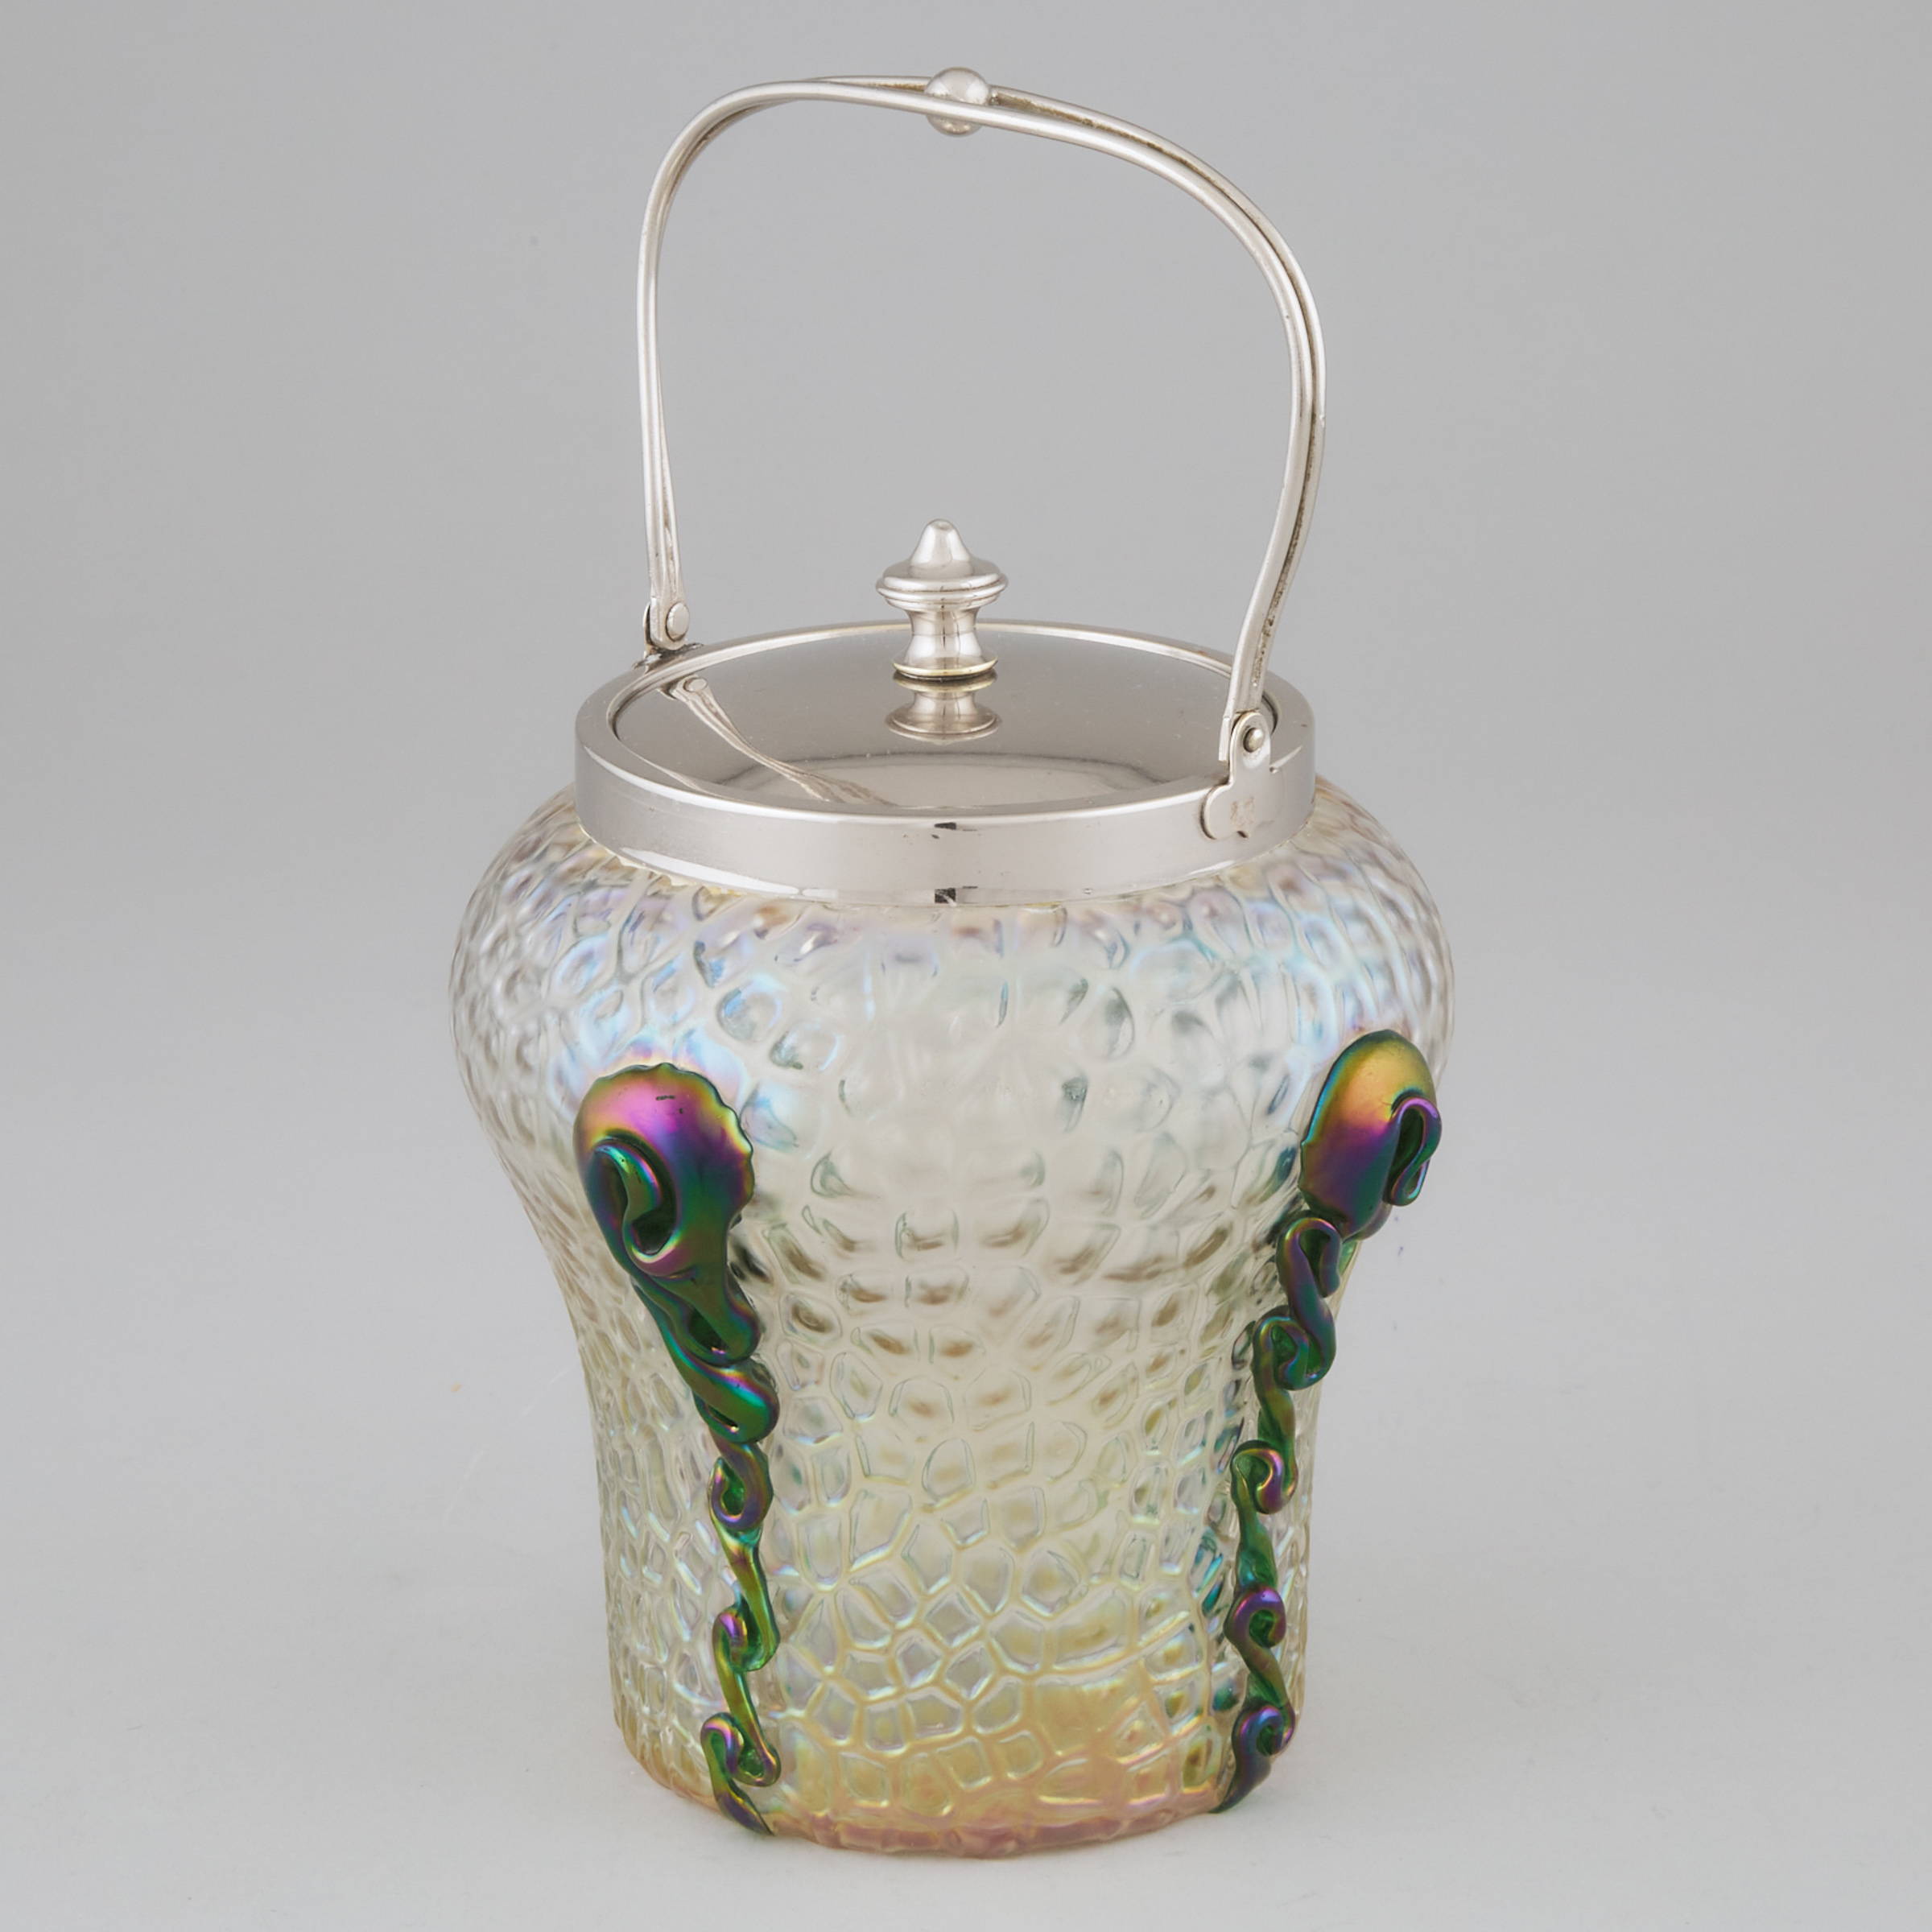 Austrian Iridescent Glass Biscuit Barrel, probably Kralik, c.1900